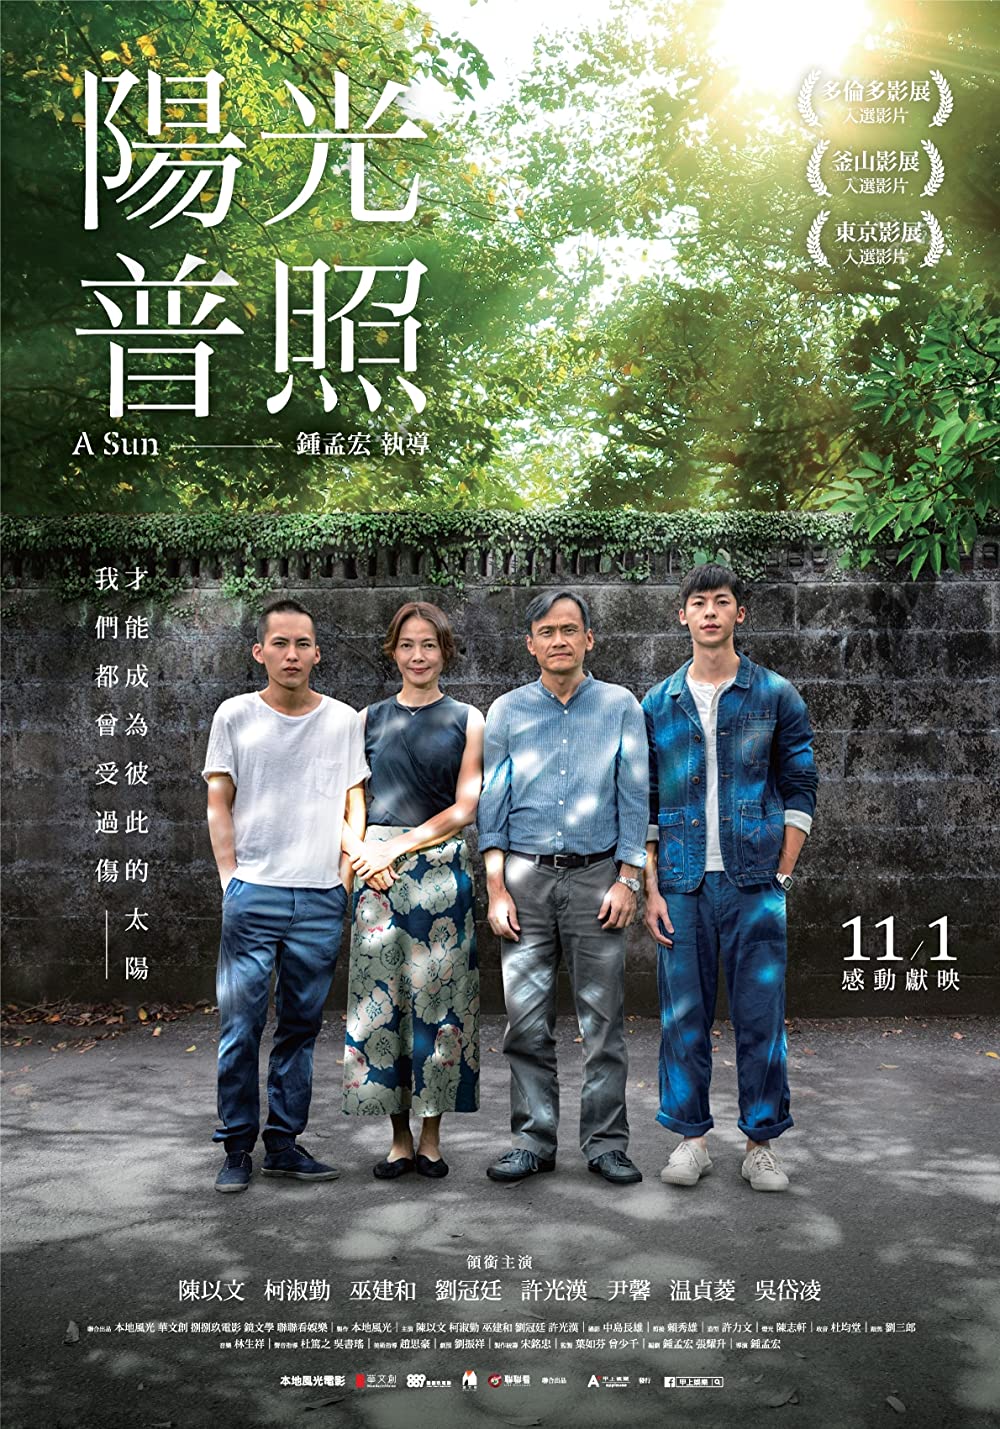 ดูหนังออนไลน์ฟรี A Sun Yangguang puzhao (2019) ชีวิตกร้านตะวัน (ซับไทย)